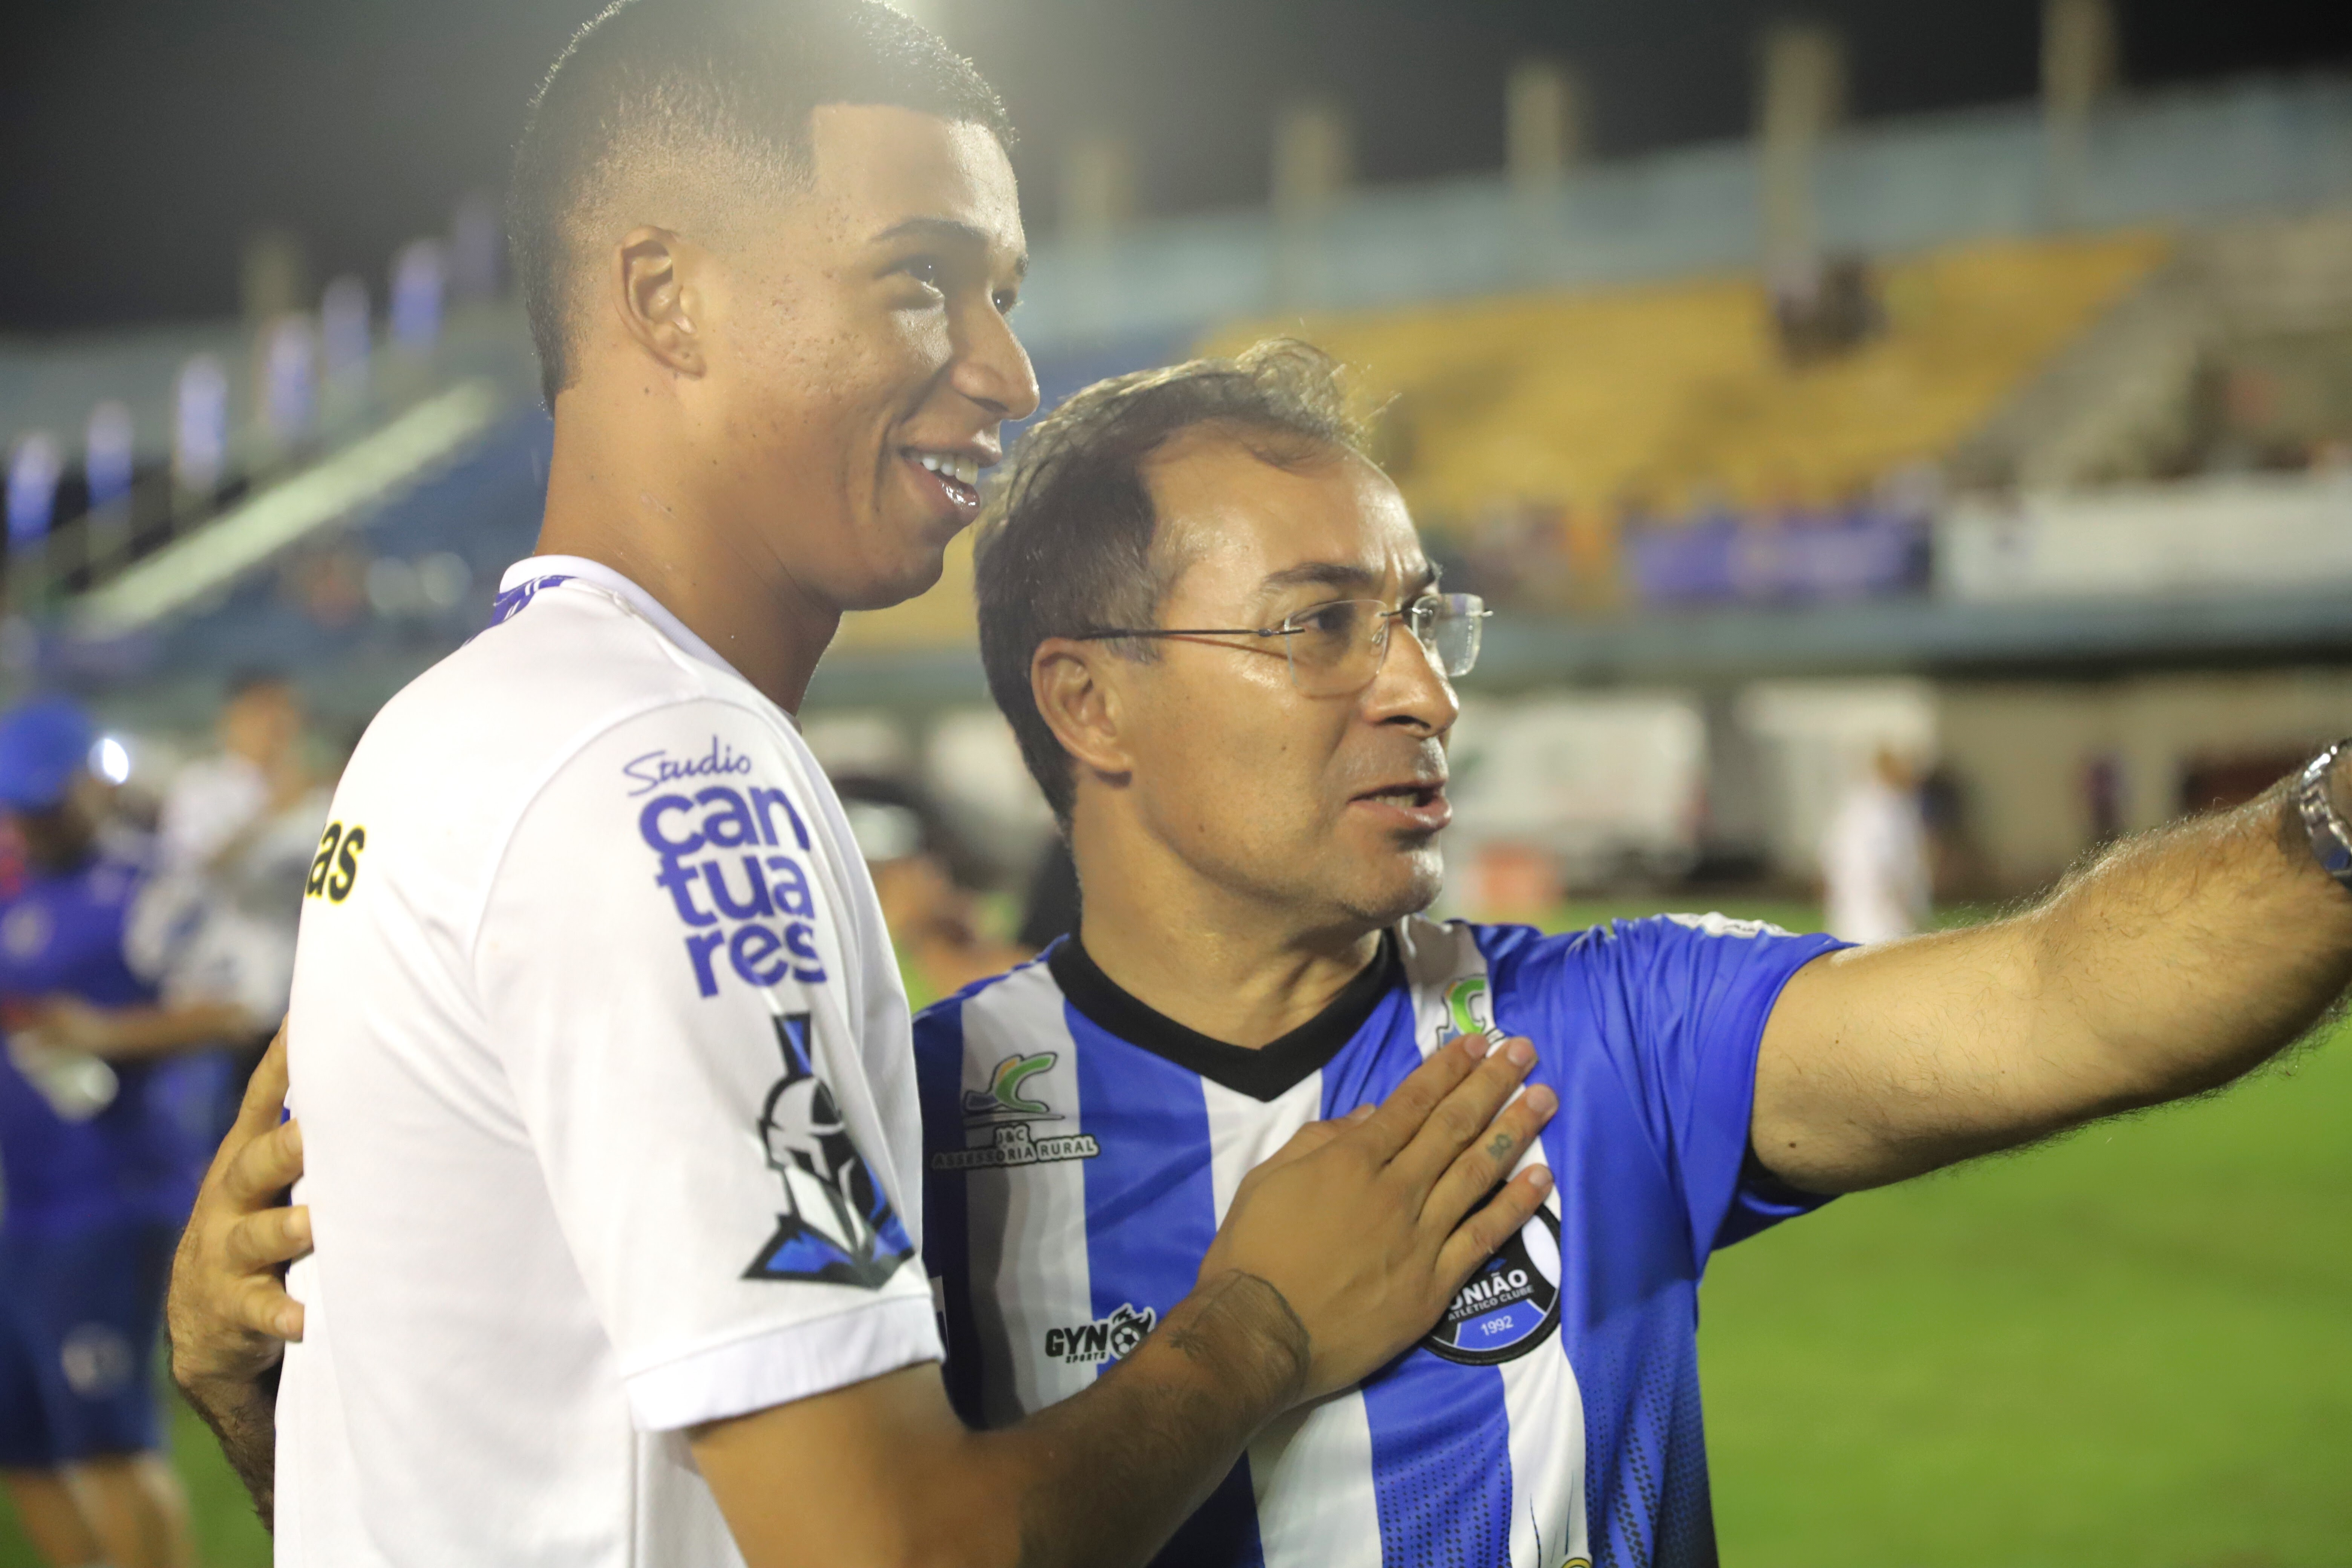  “Fico feliz em ver Araguaína crescendo no futebol profissional, com duas grandes equipes representando tão bem a nossa força no Tocantins. É motivo de muito orgulho nossa cidade conquistar mais um campeonato”, disse o prefeito Wagner